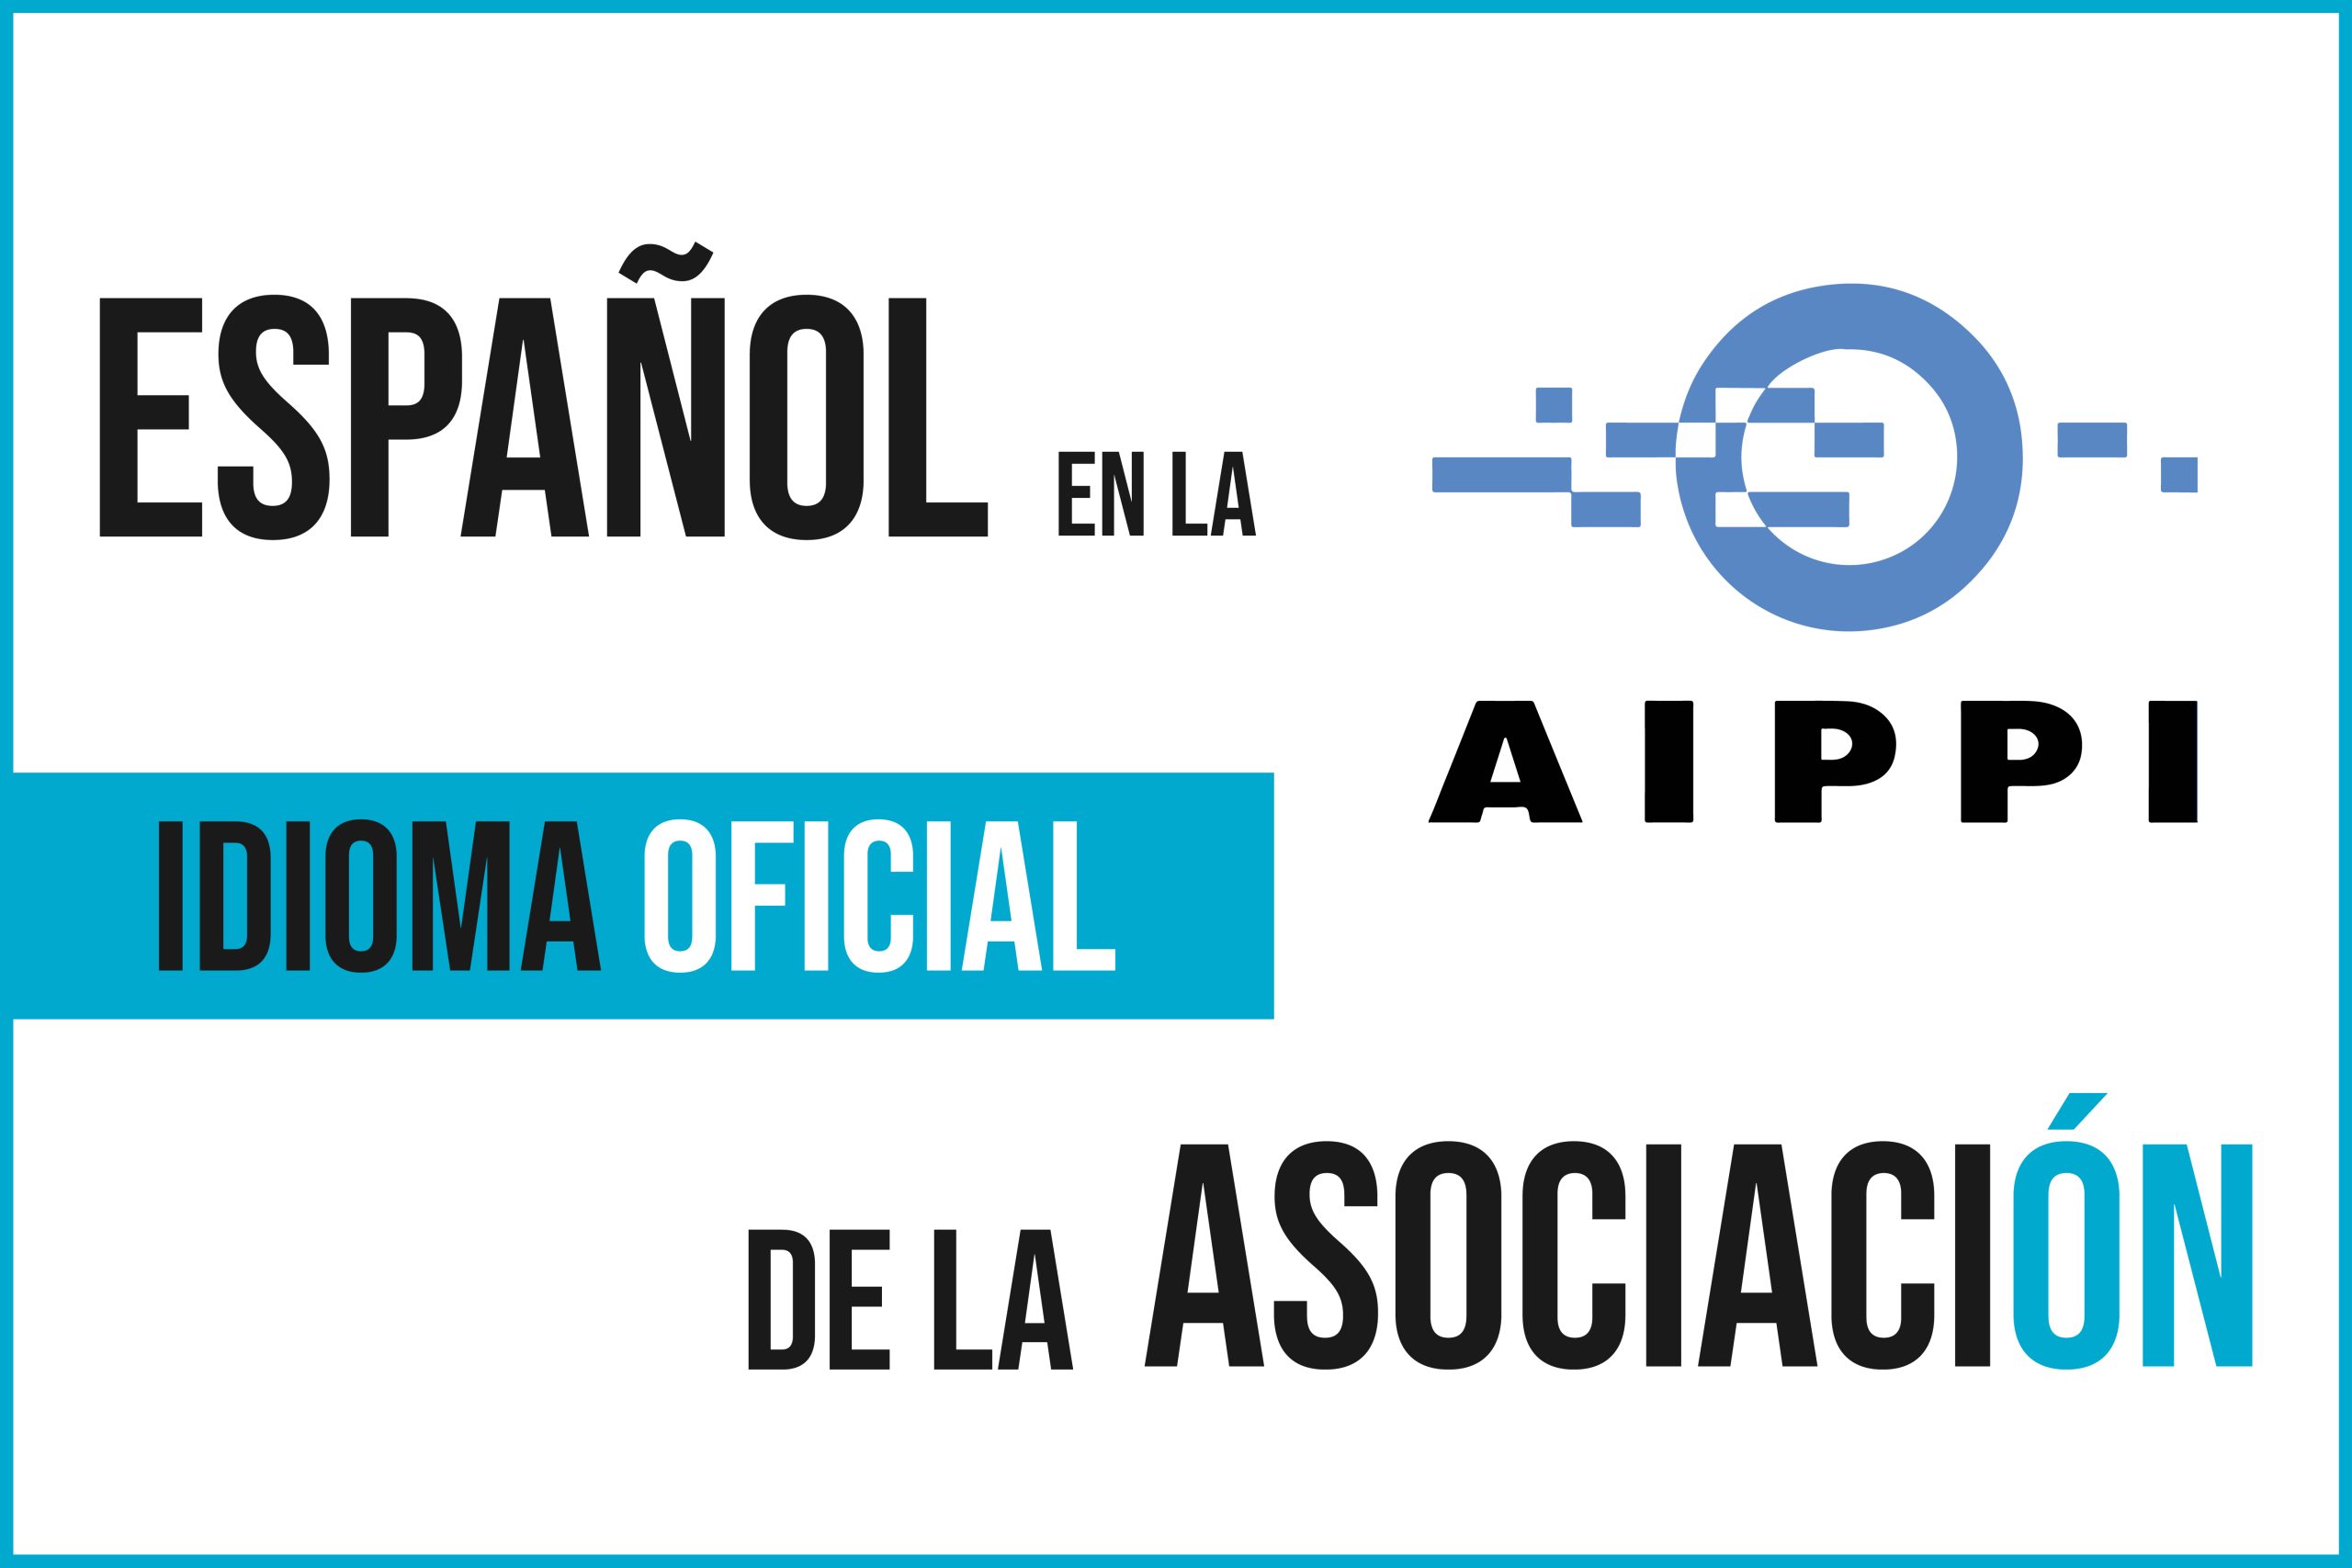 西班牙语是 aippi 协会的官方语言